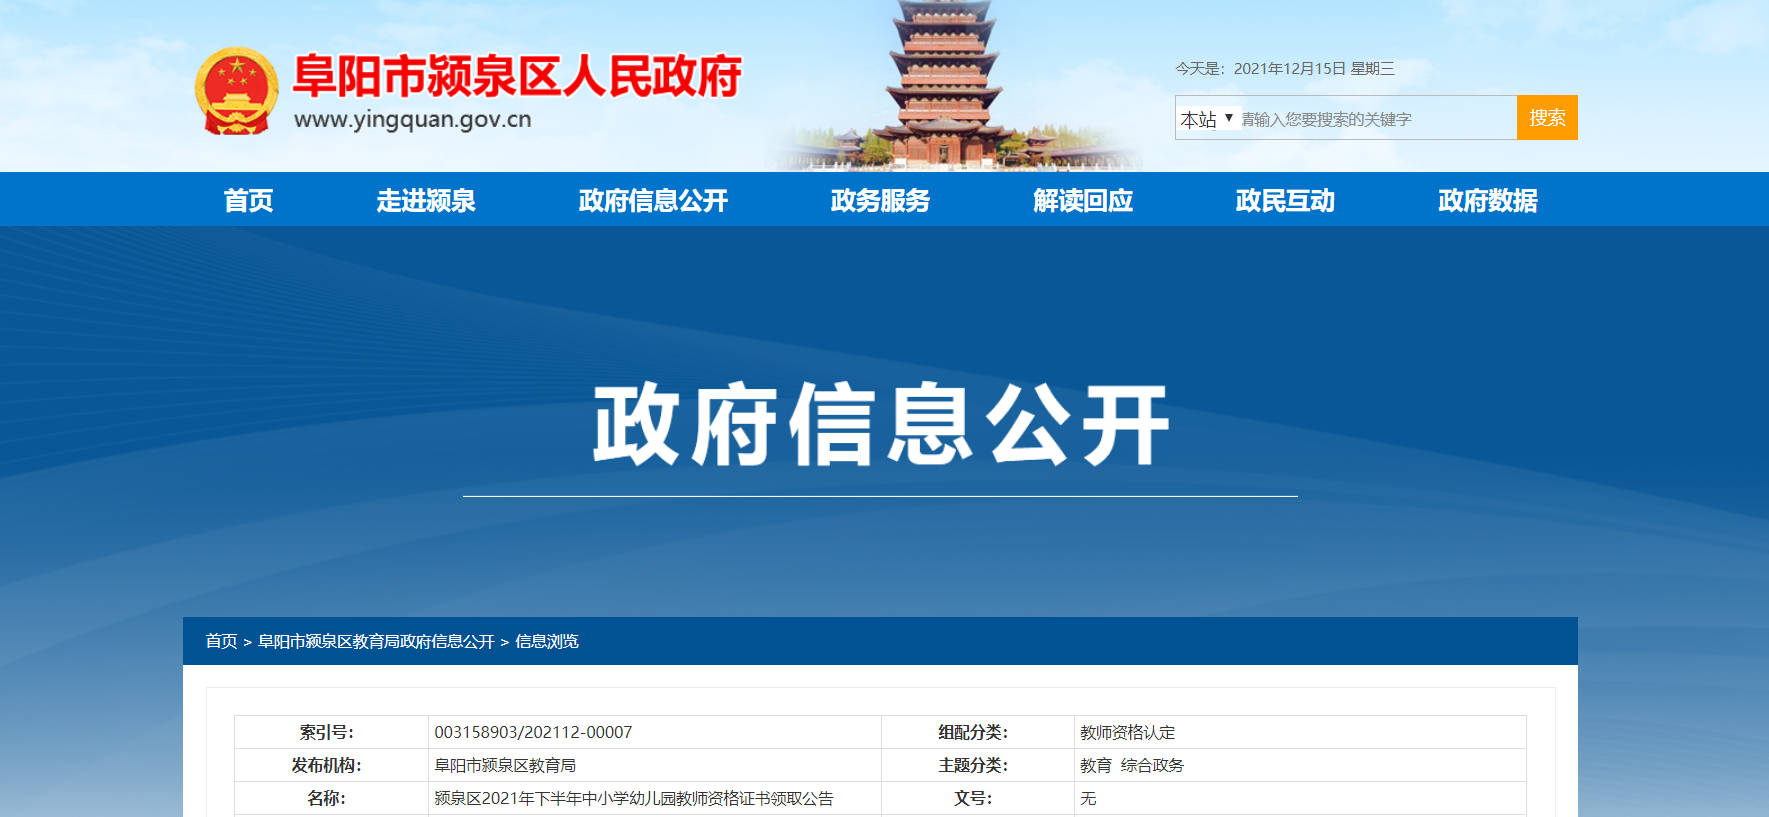 2021下半年安徽阜阳颍泉区教师资格证书领取公告